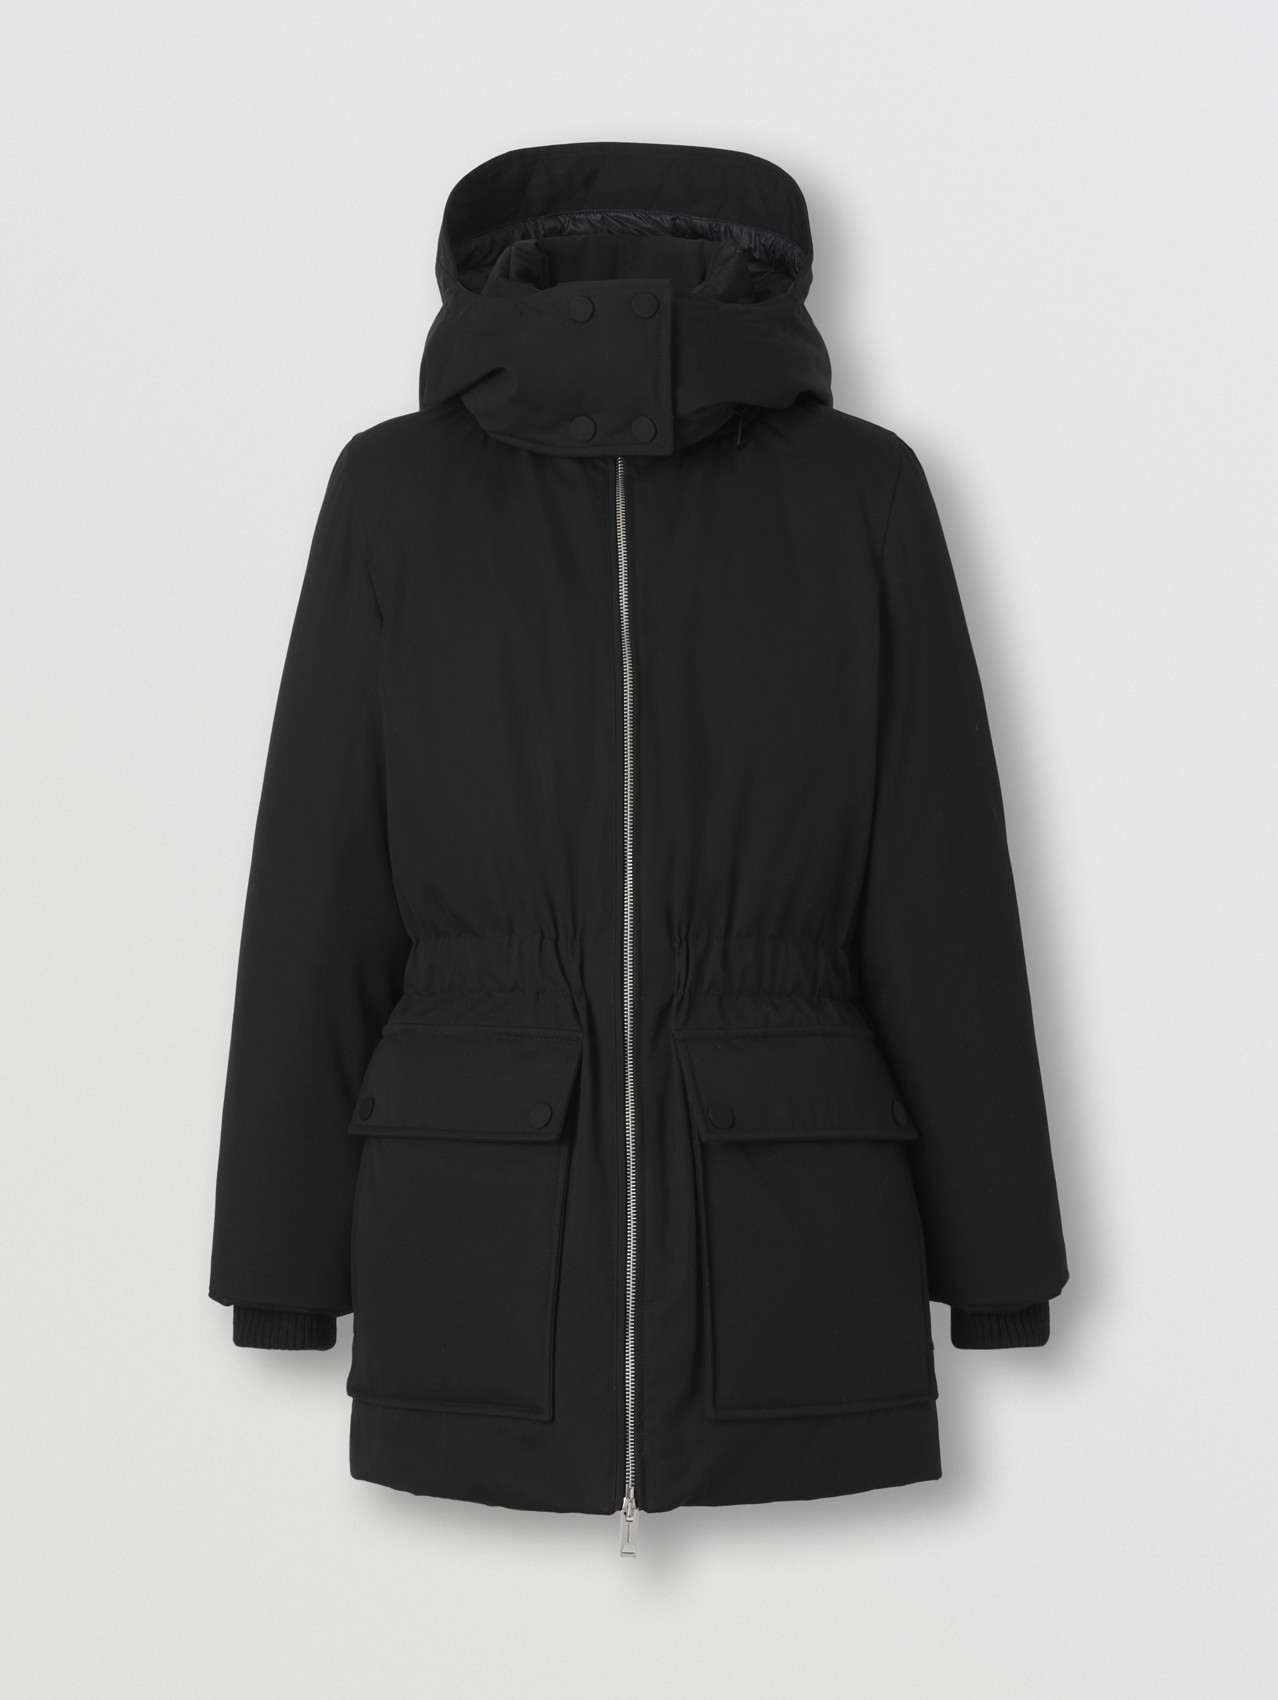 Mantel aus Baumwollgabardine mit abnehmbarer Kapuze (Schwarz)